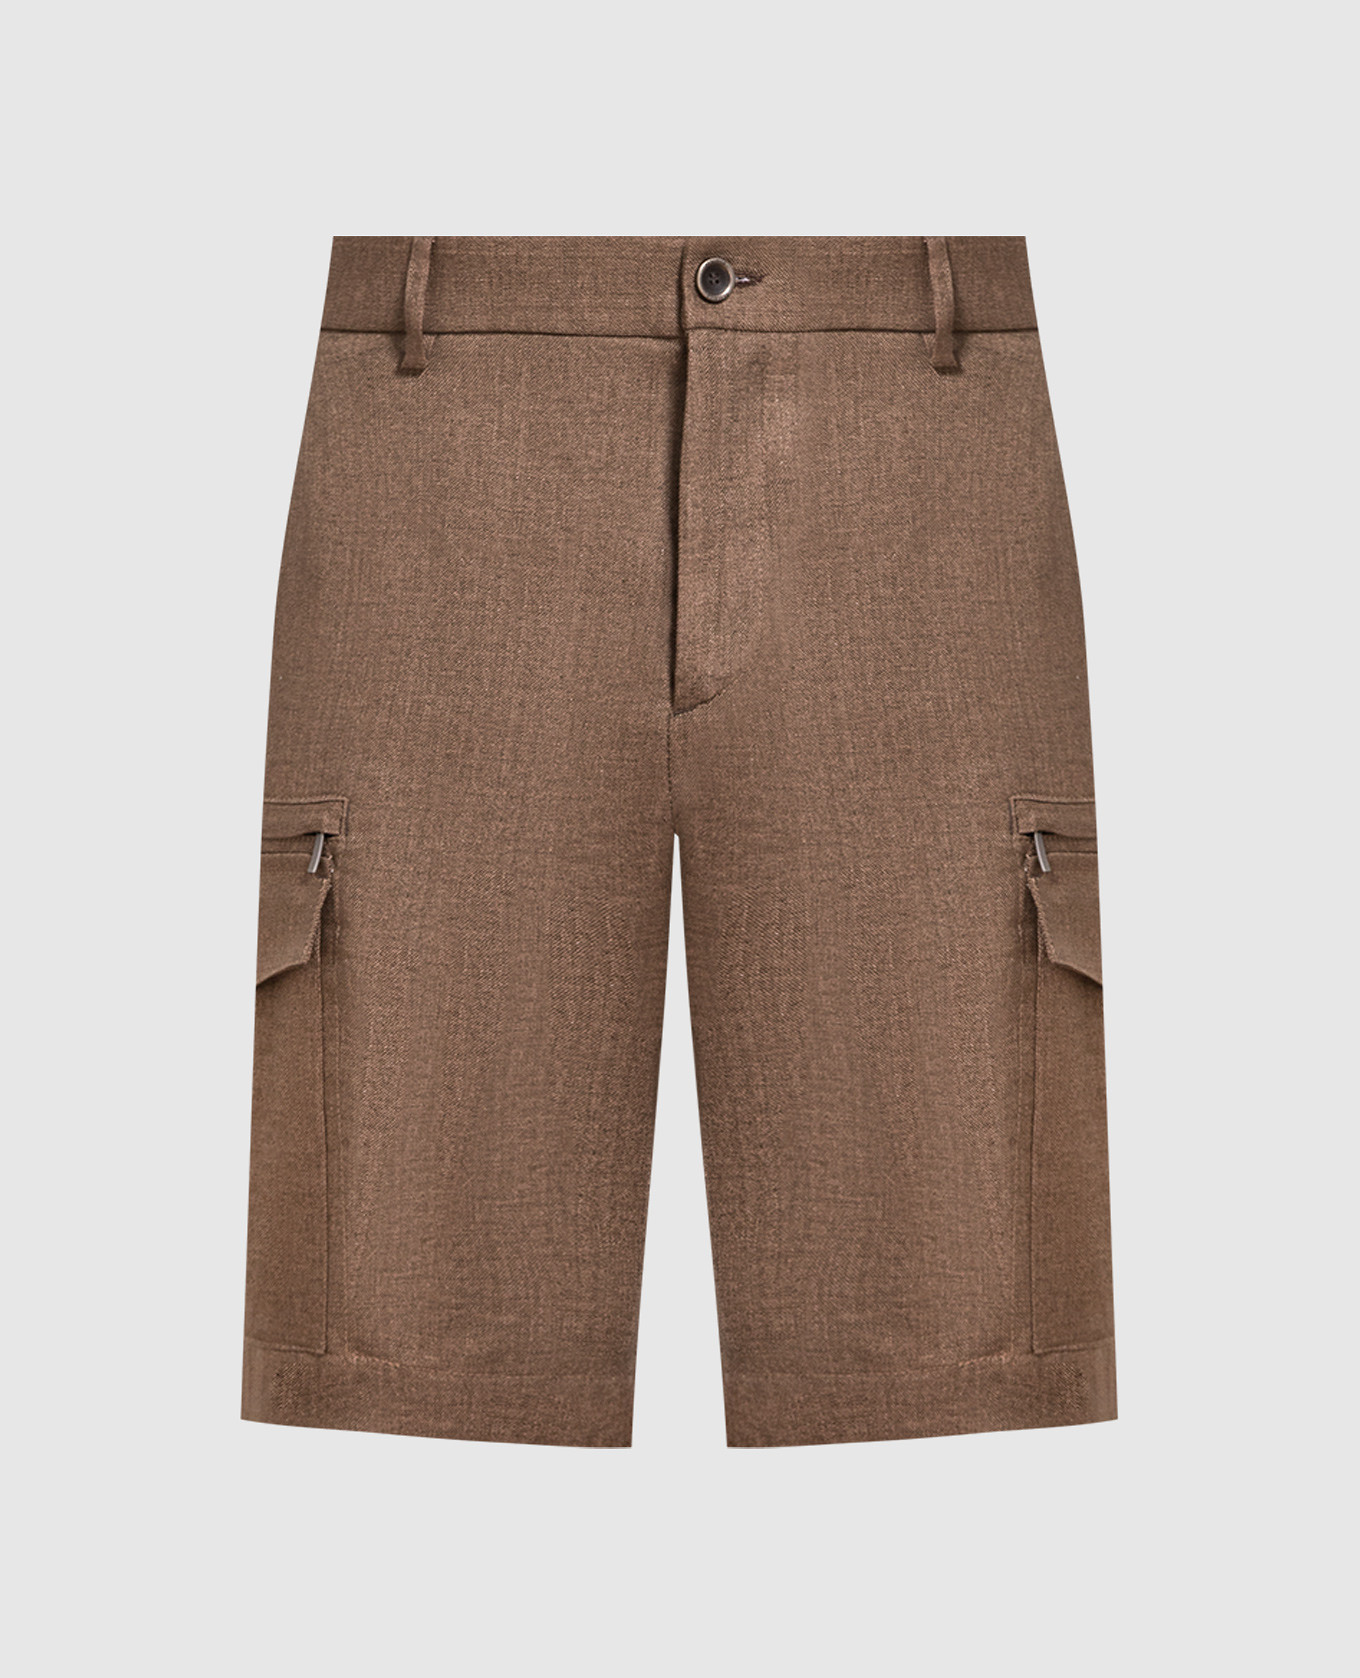 Brown linen cargo shorts